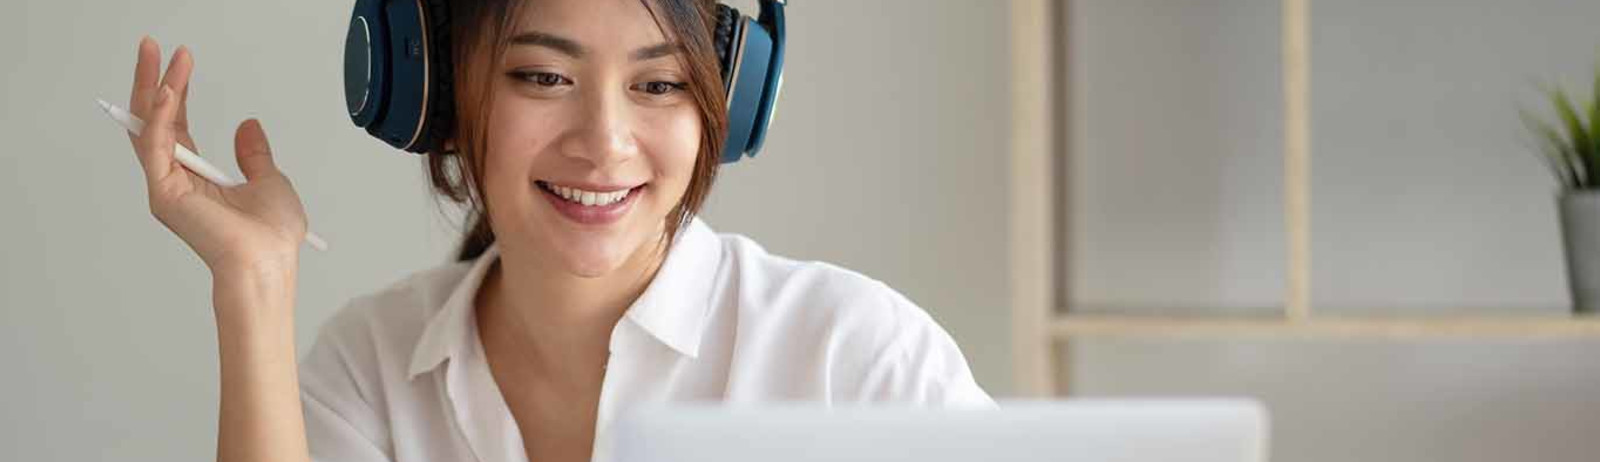 A female IELTS test taker wearing headphones preparing for IELTS test on her laptop